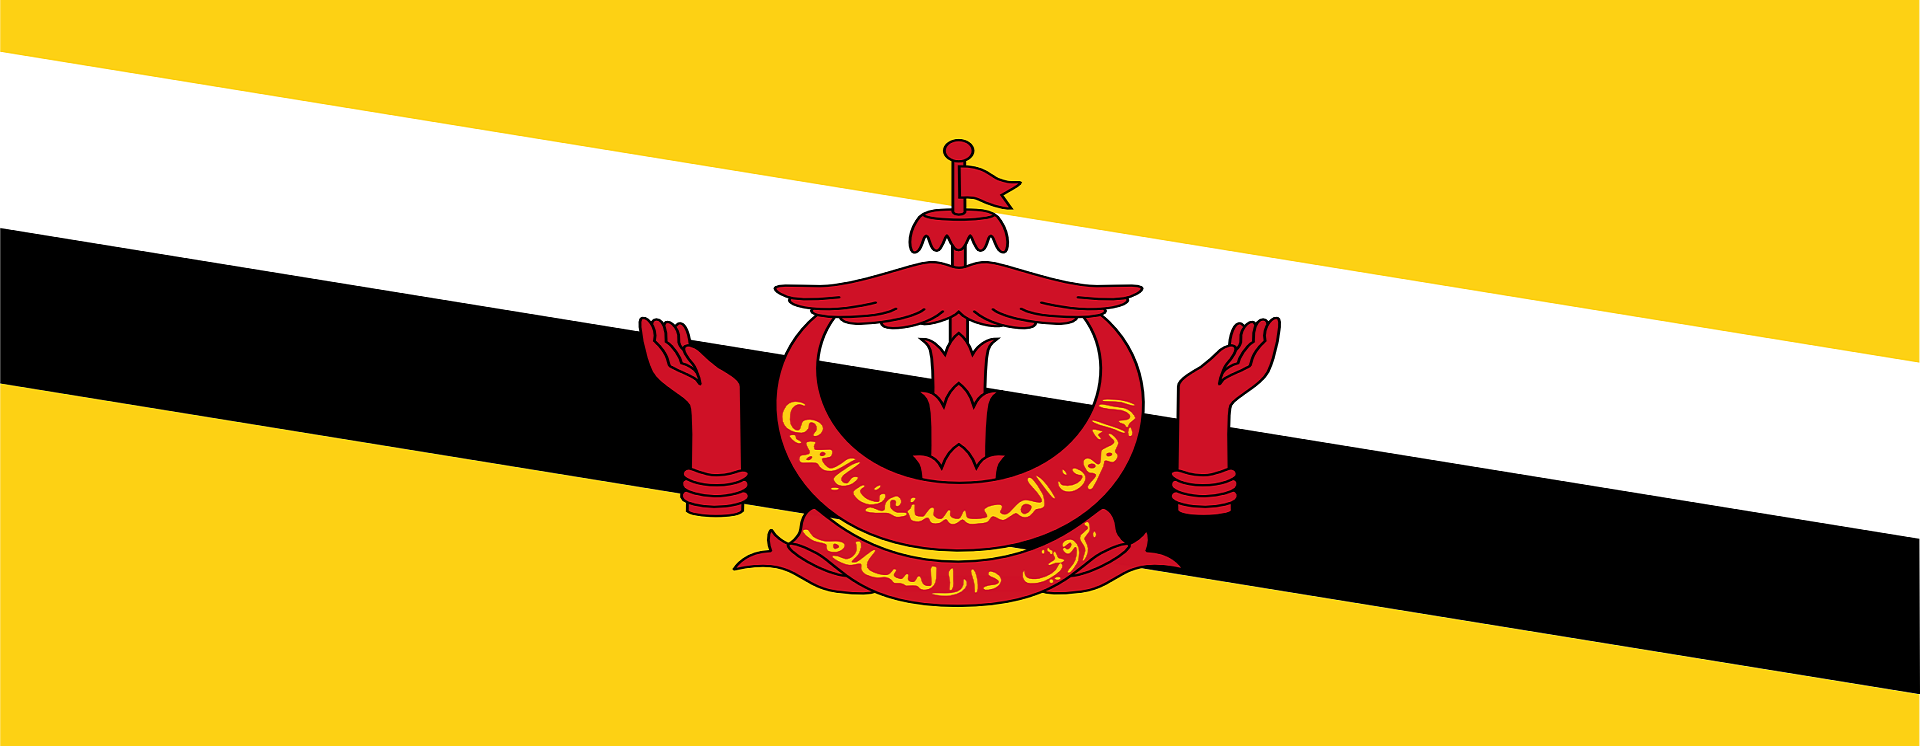 Otubio.com - Brunei flag